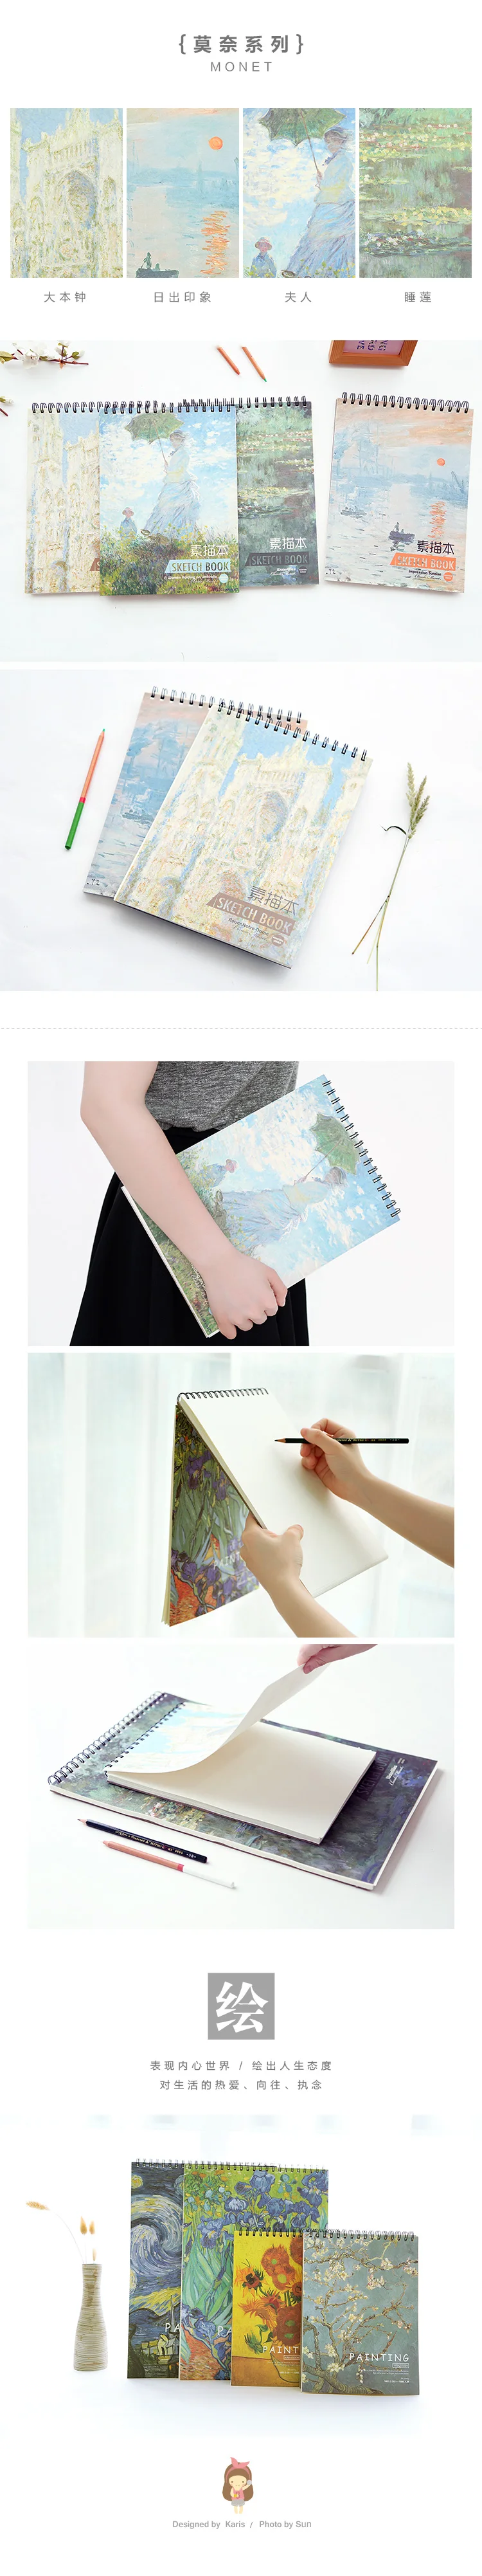 36 листов Живопись Ван Гога спираль эскиз Pad A4 закрепленный блокнот набор для граффити Рисование книга манга художественные принадлежности